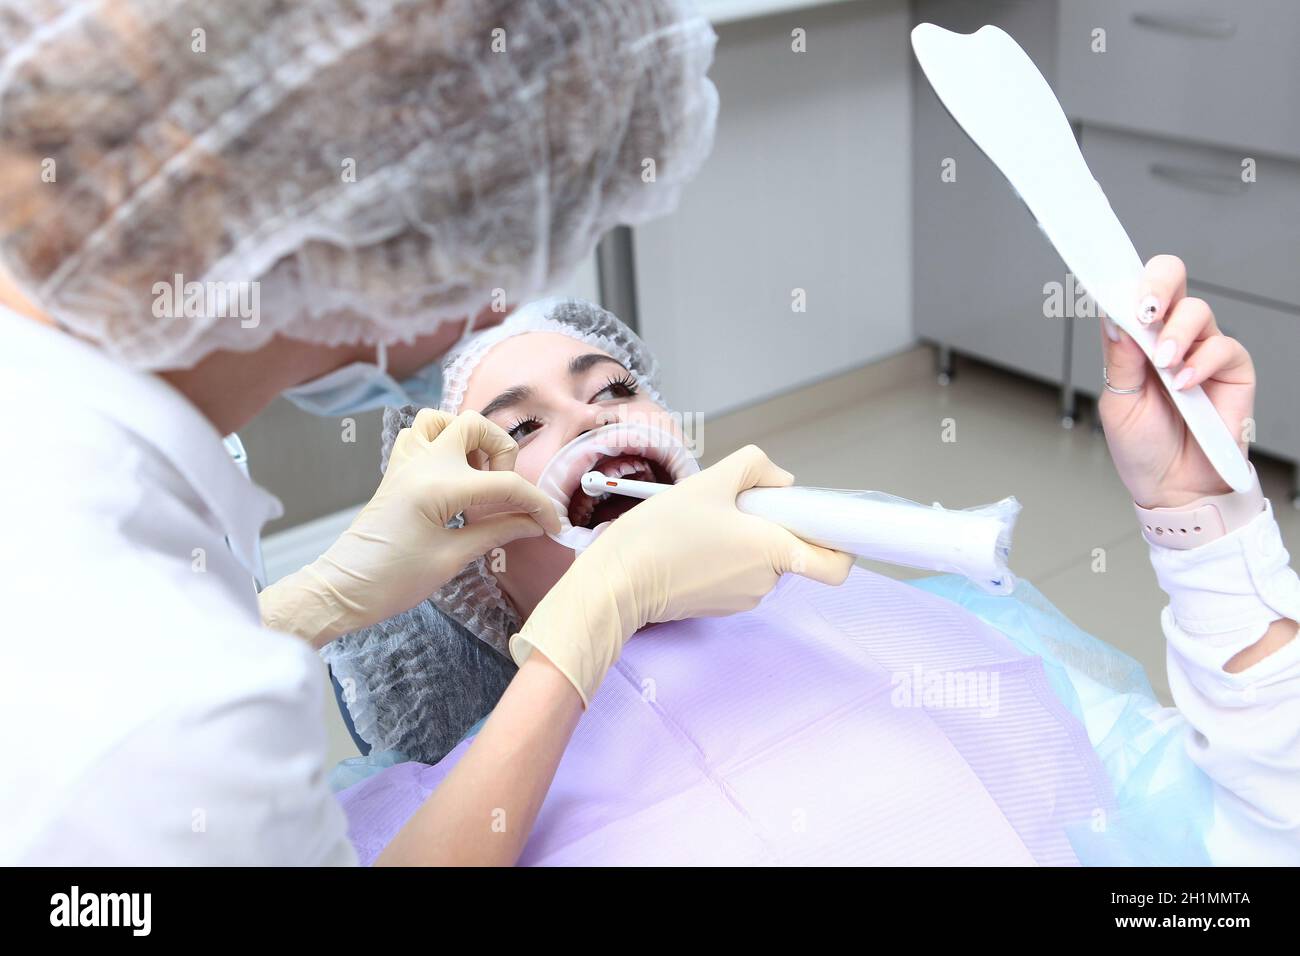 Professionelle Zahnreinigung.Elektrische Zahnbürste in den Händen eines  Zahnarztes. Ein junges Mädchen bei einem Zahnarzttermin schaut sich selbst  im Spiegel an.Traini Stockfotografie - Alamy